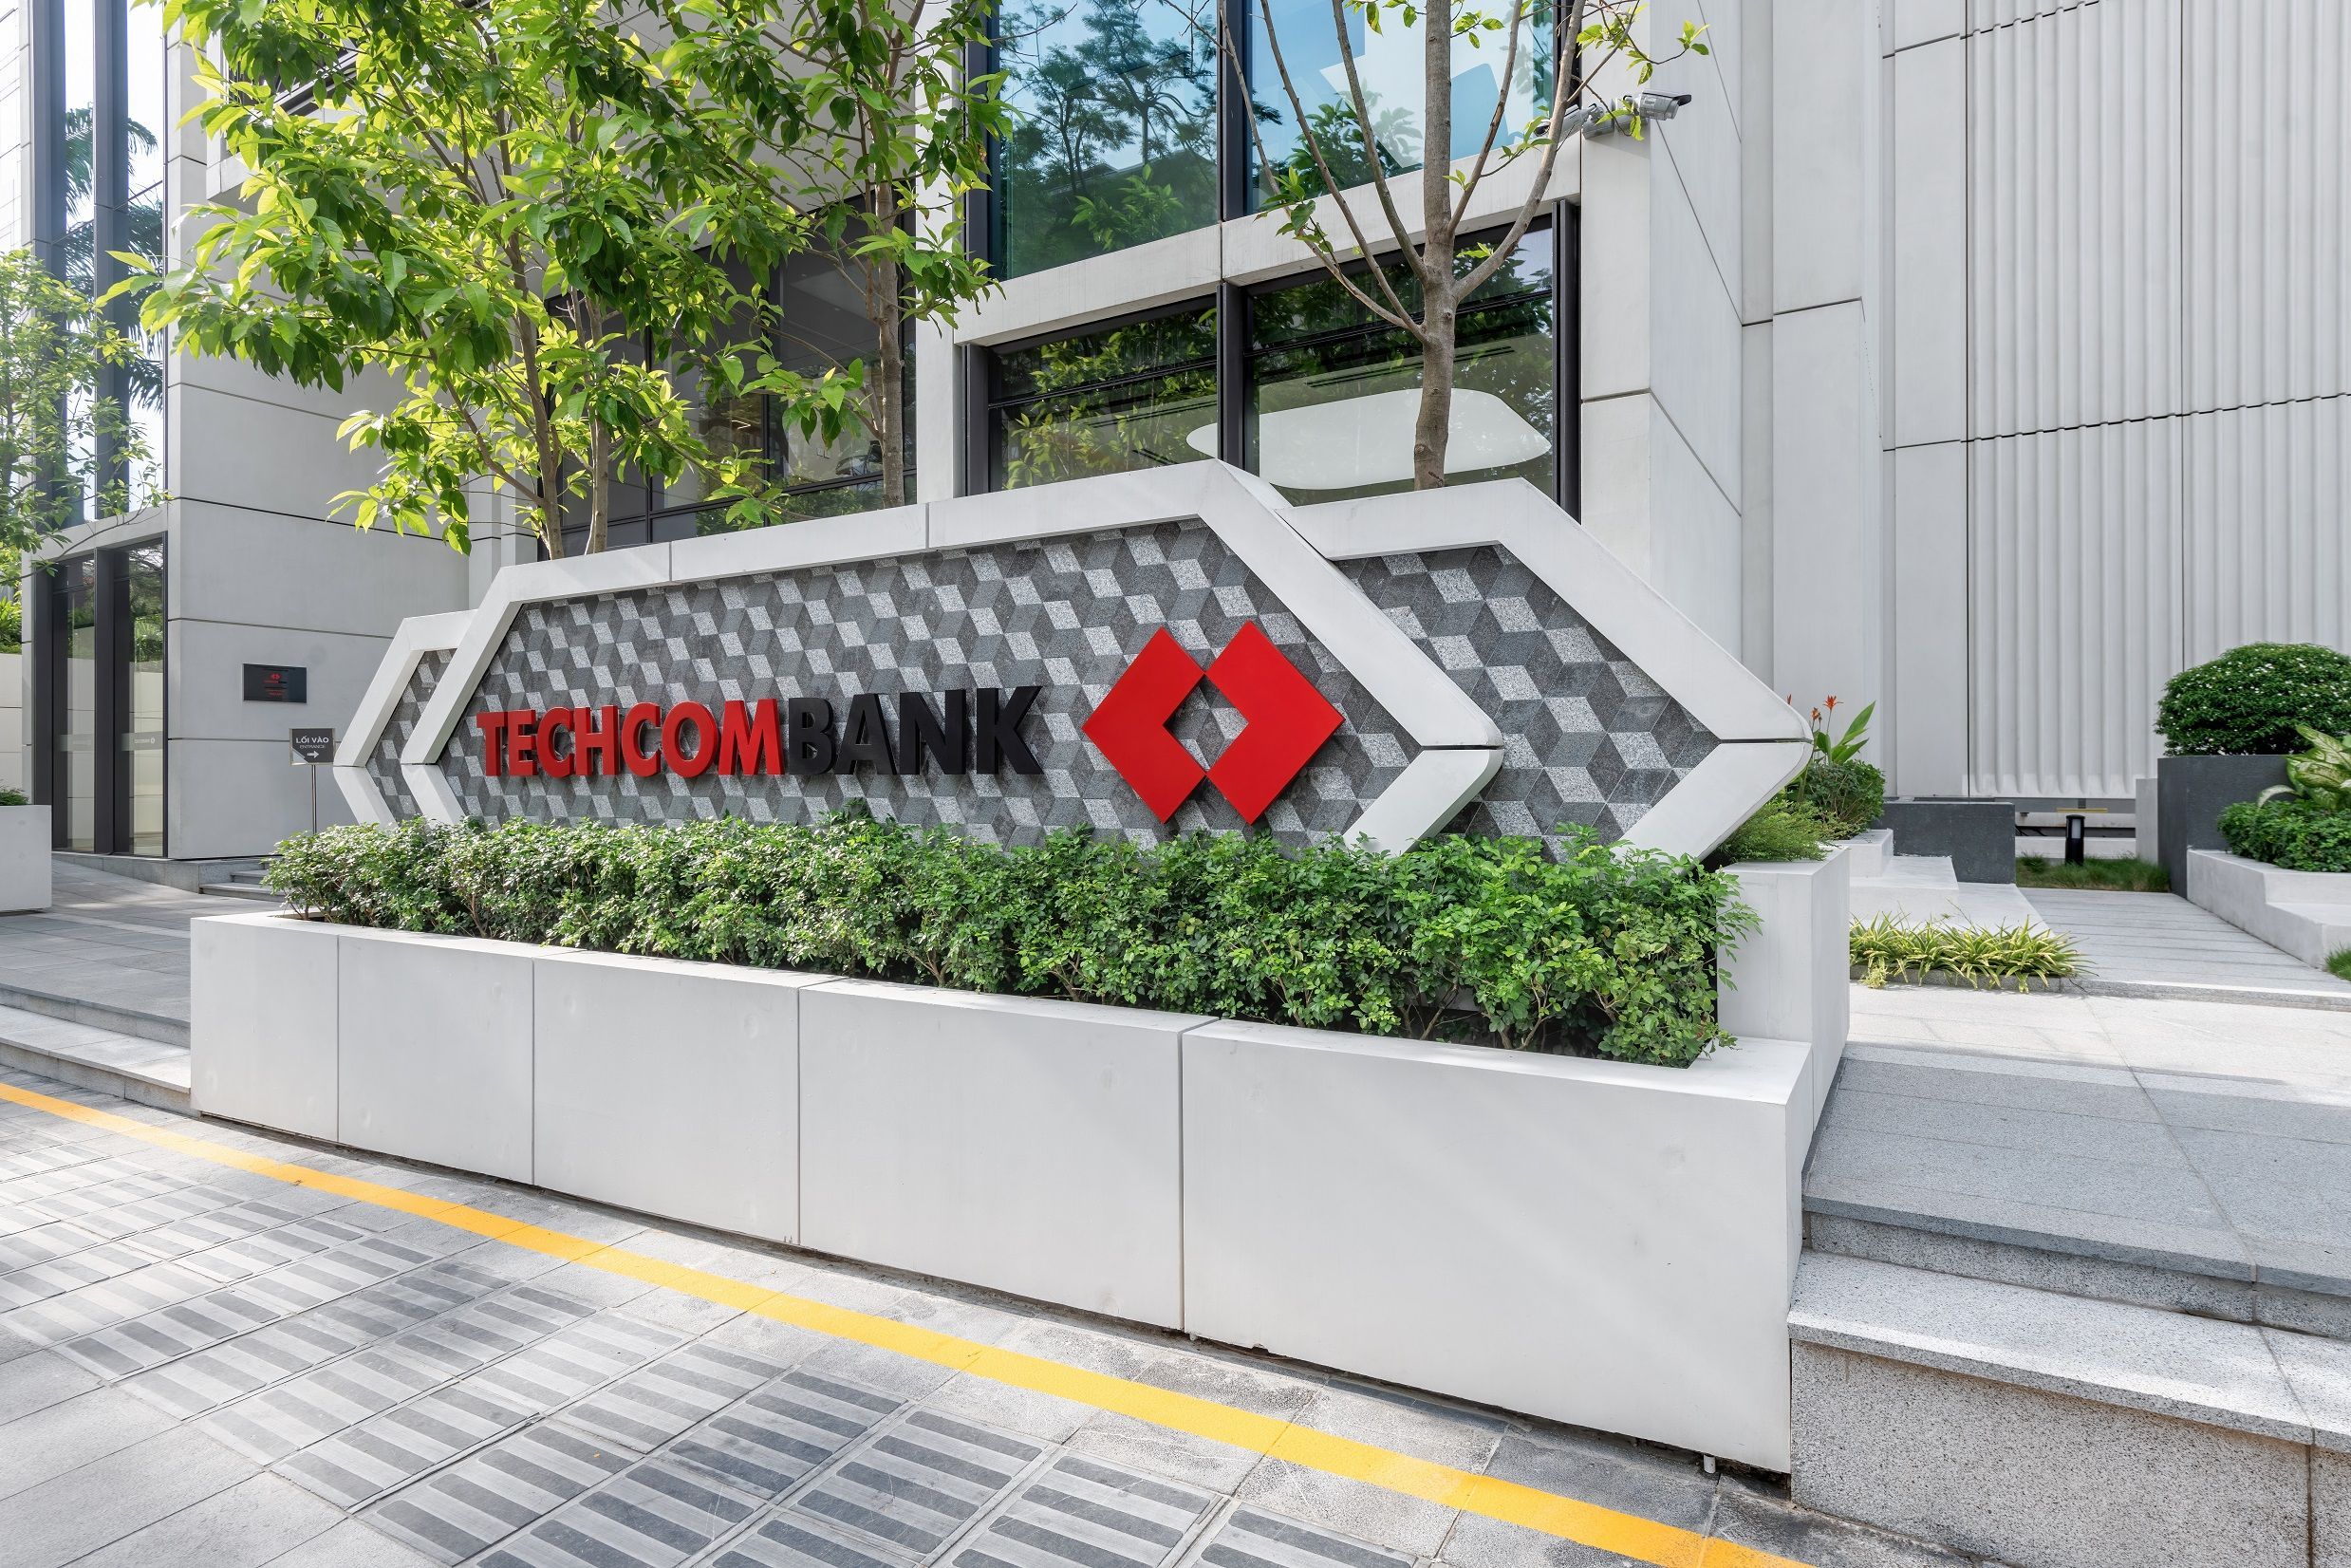 Các con của Chủ tịch Techcombank Hồ Hùng Anh chi hàng nghìn tỷ để mua cổ phiếu TCB